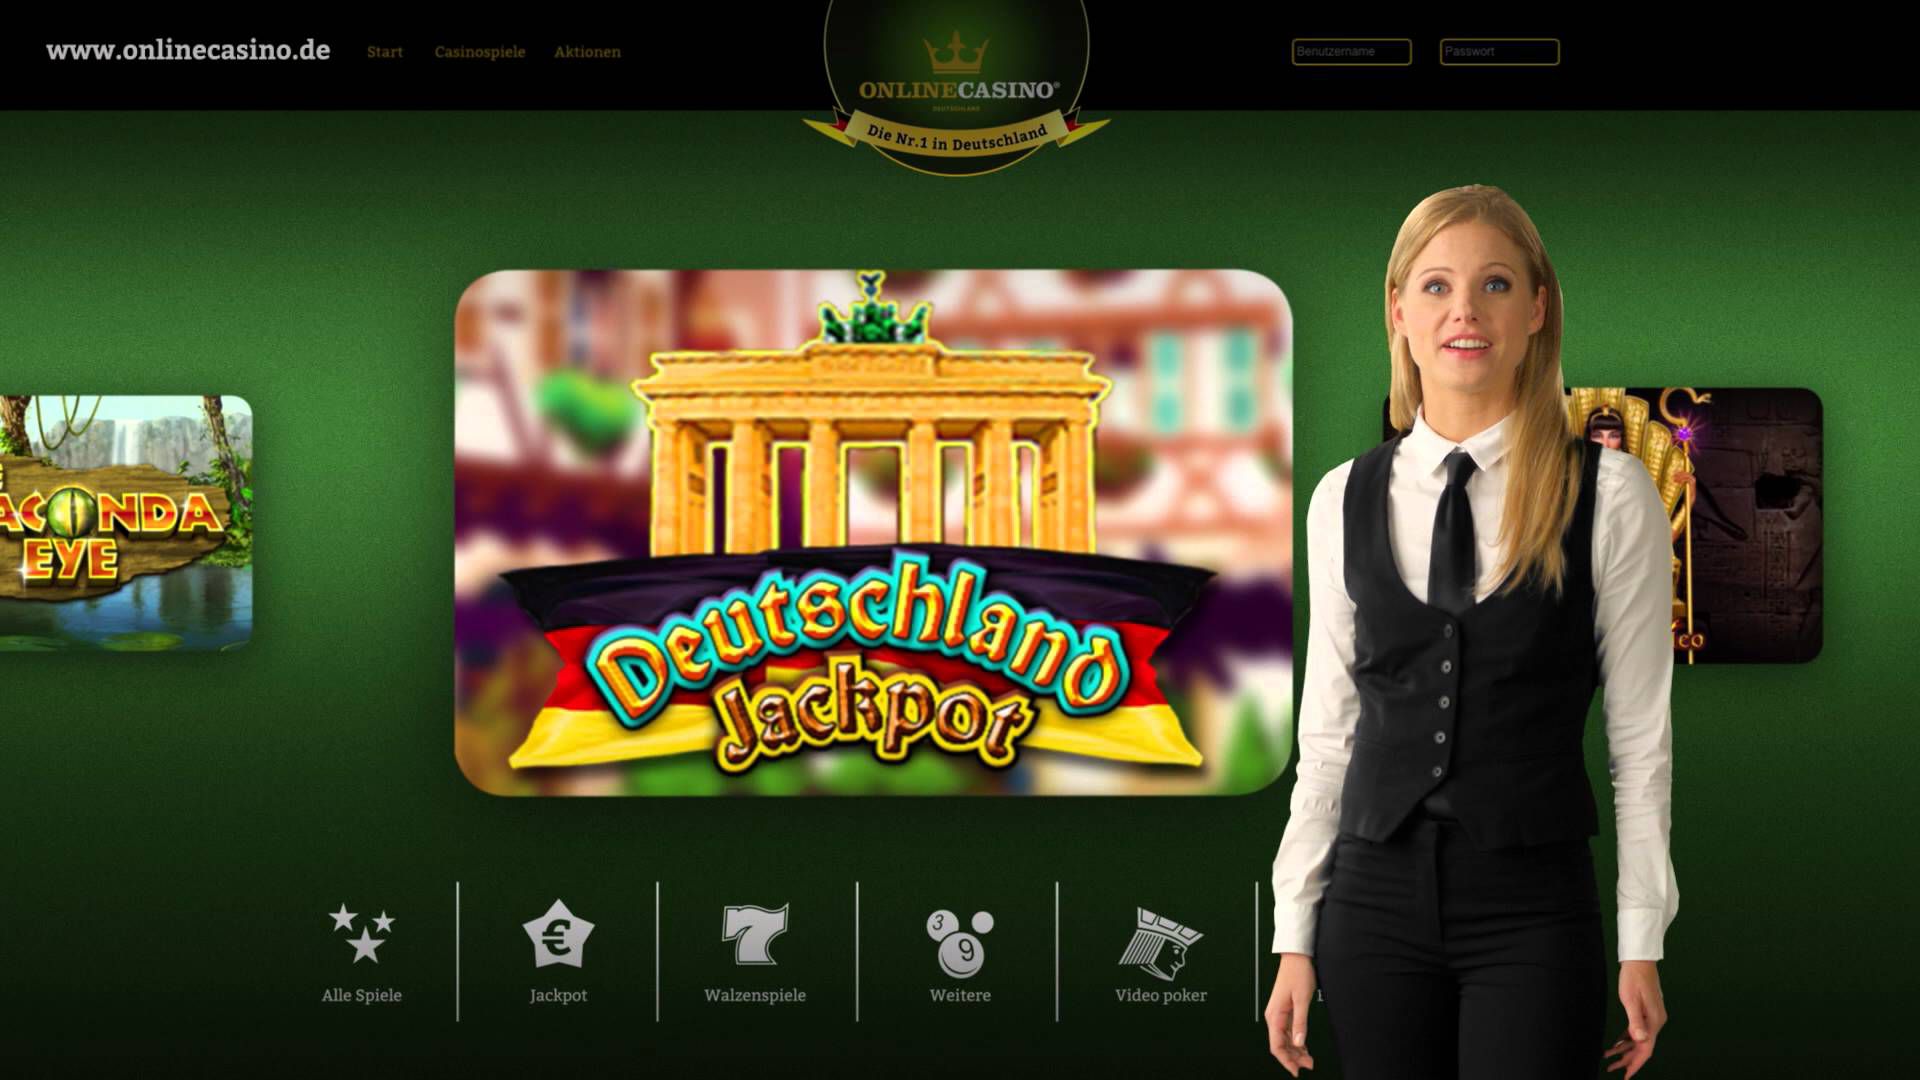 Online Casino Deutschland Werbung